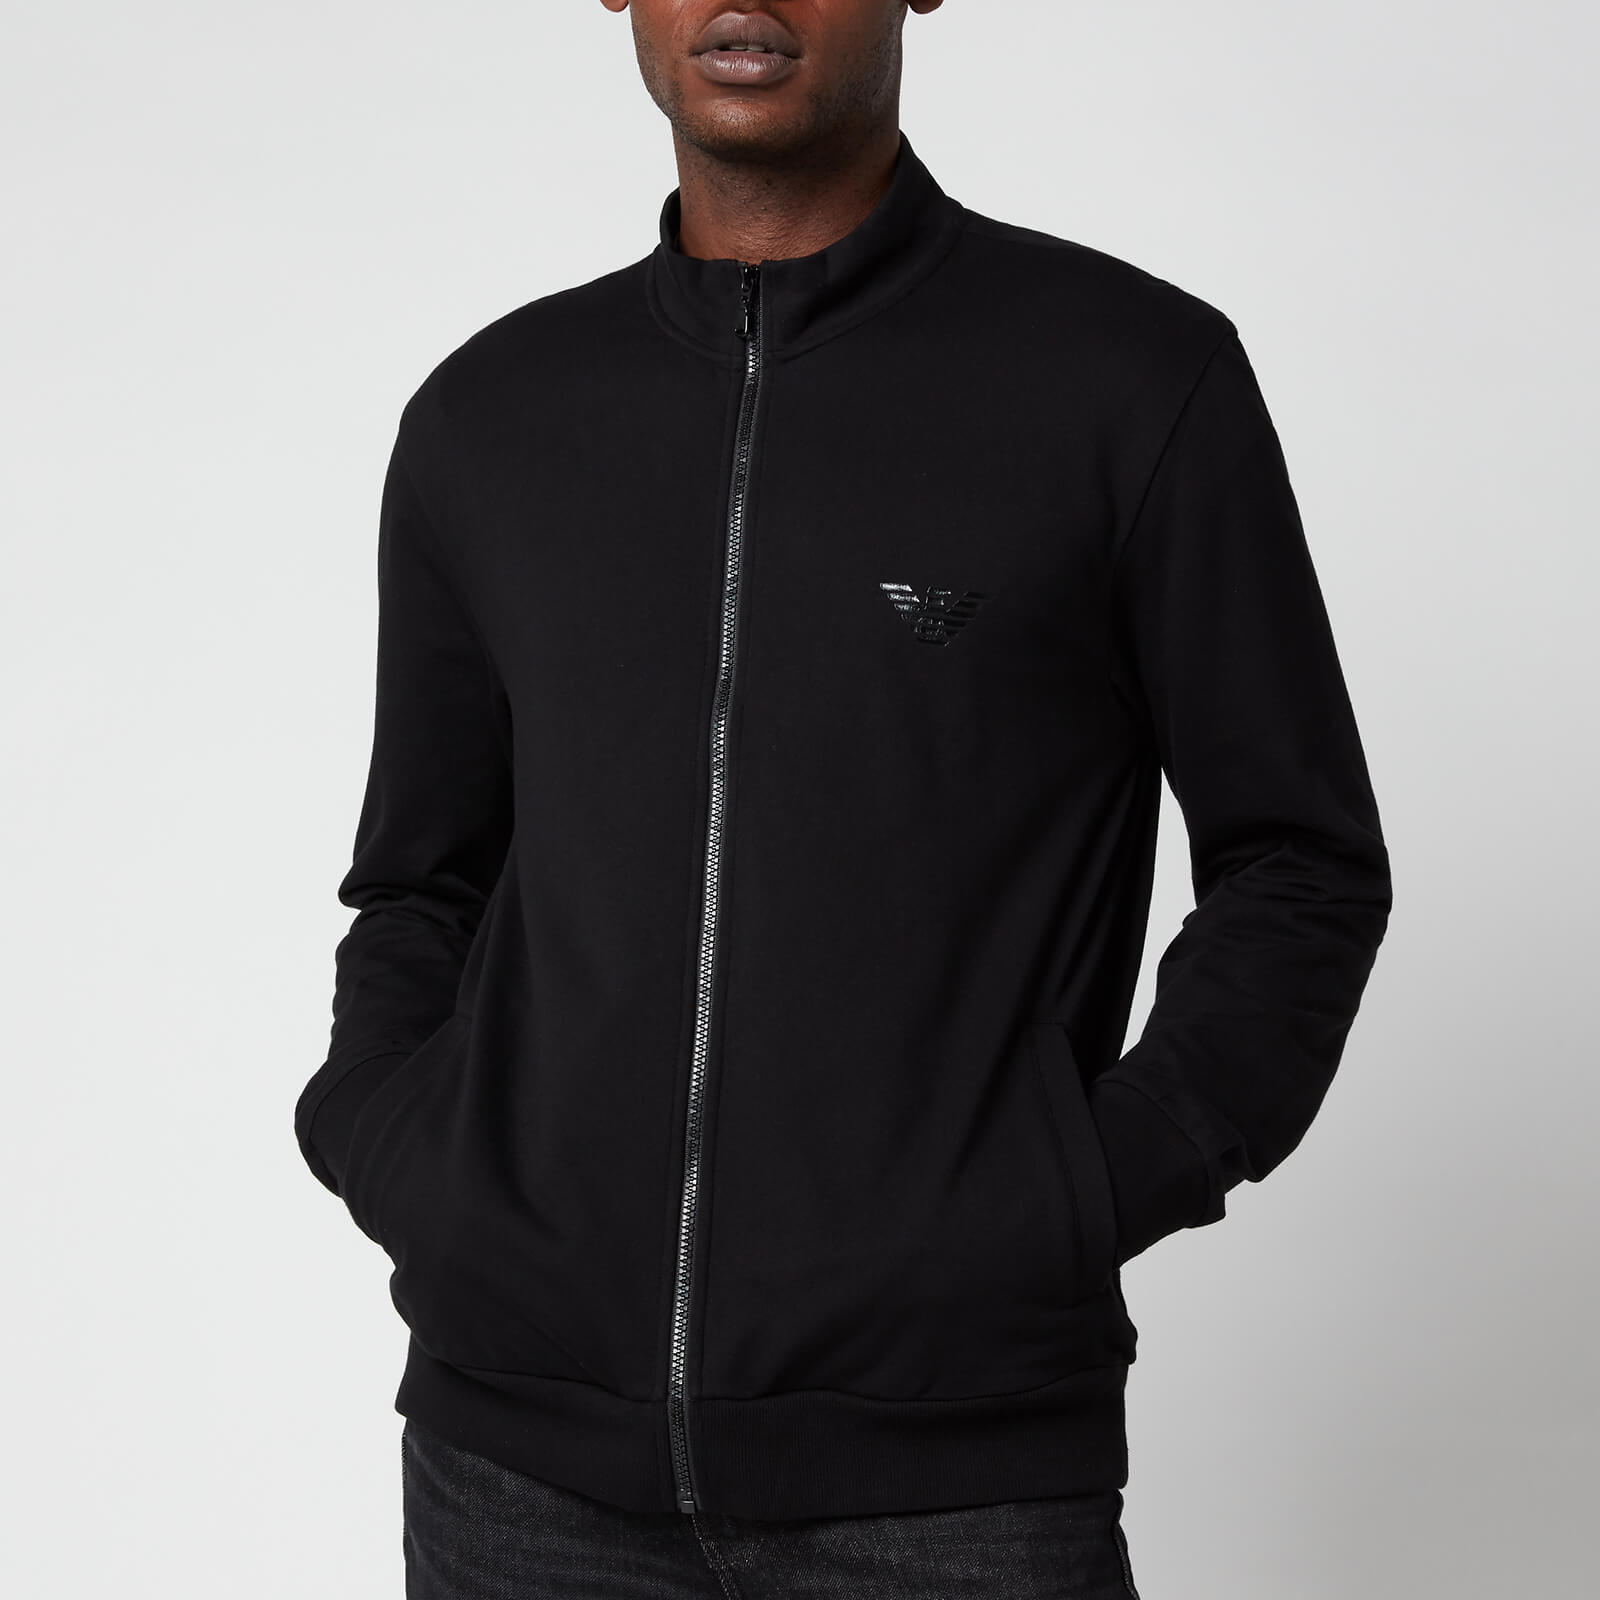 Emporio Armani Men's Iconic Terry Zip Through Sweatshirt - Black - S